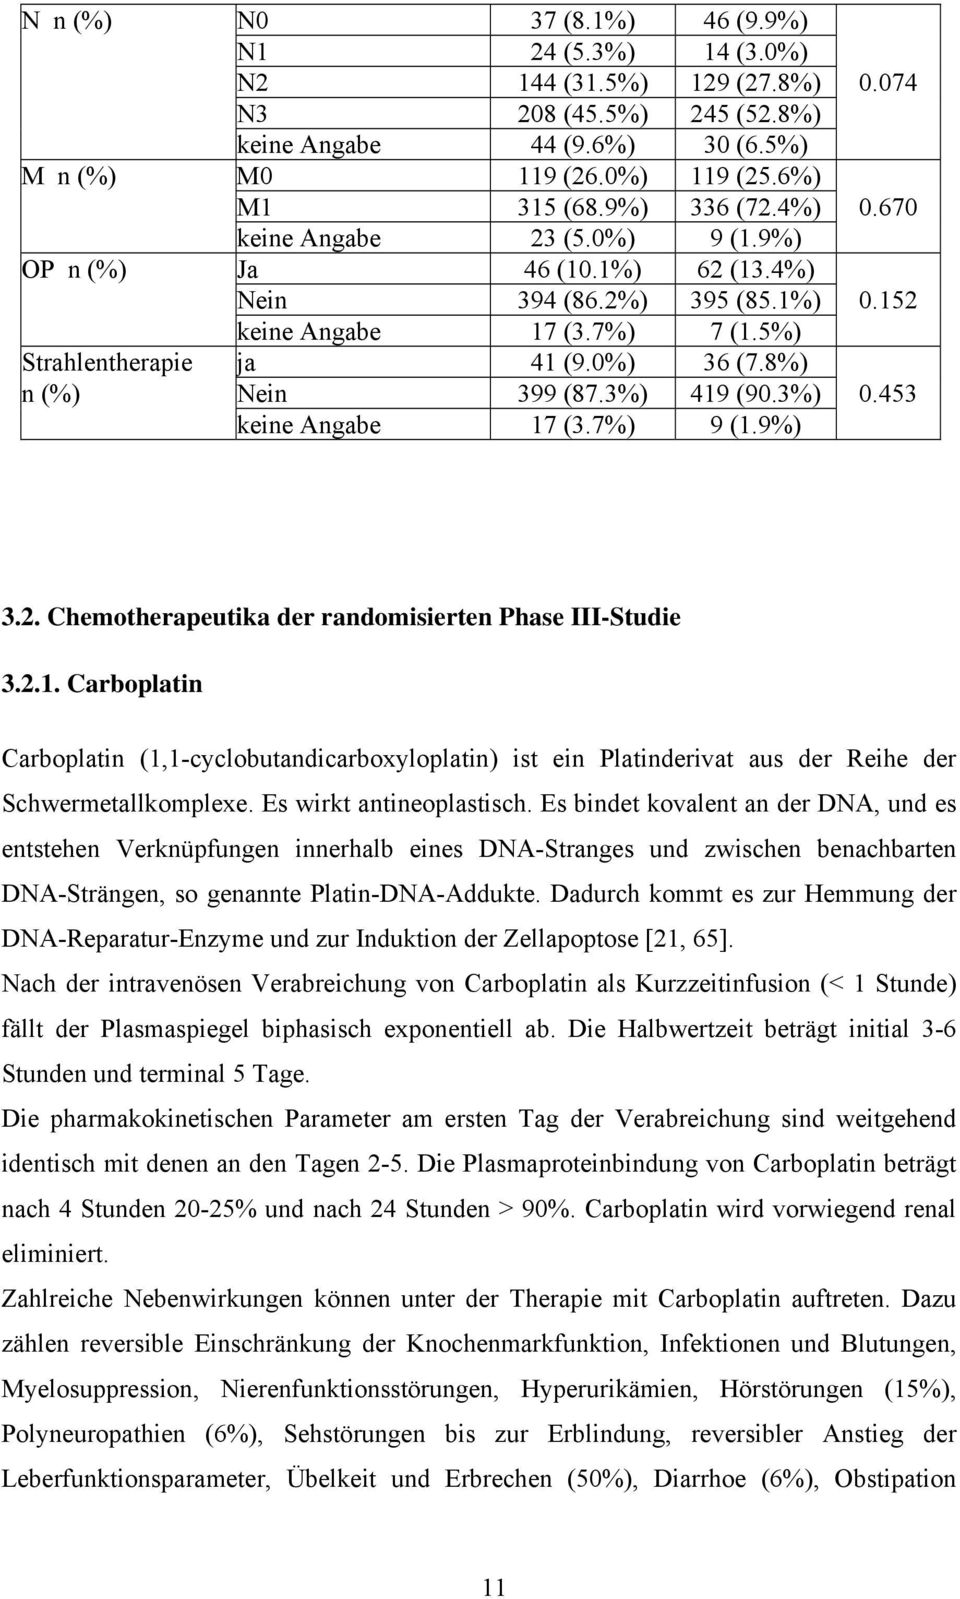 8%) n (%) Nein 399 (87.3%) 419 (90.3%) 0.453 keine Angabe 17 (3.7%) 9 (1.9%) 3.2. Chemotherapeutika der randomisierten Phase III-Studie 3.2.1. Carboplatin Carboplatin (1,1-cyclobutandicarboxyloplatin) ist ein Platinderivat aus der Reihe der Schwermetallkomplexe.